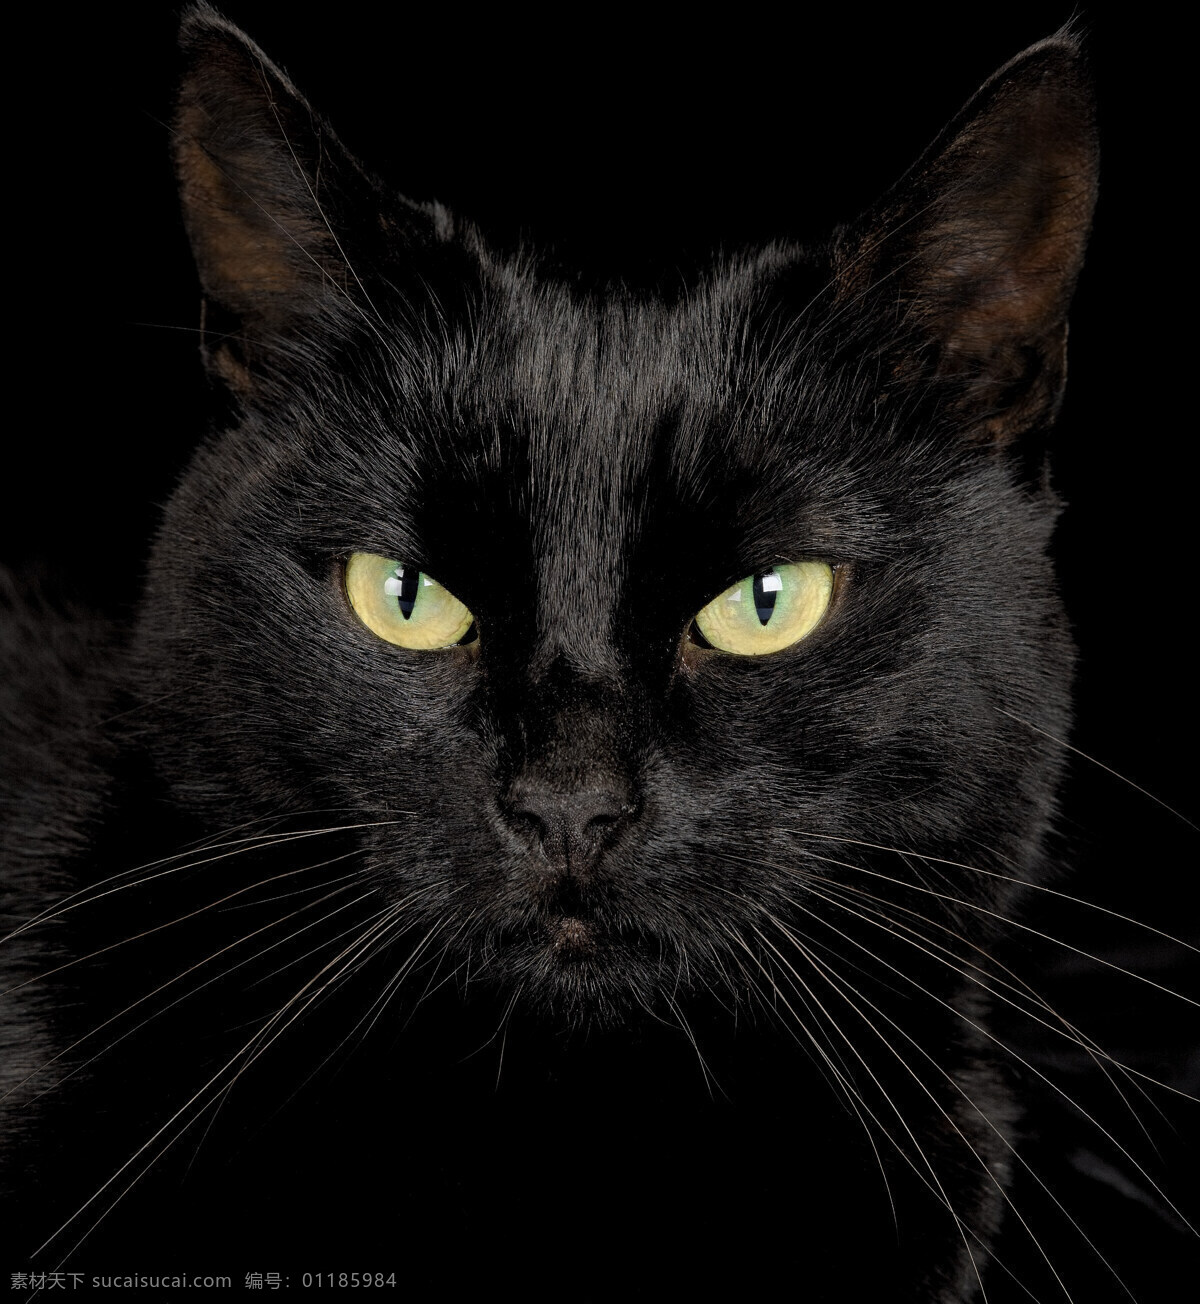 可爱 黑猫 小猫 猫咪 萌 宠物猫 动物世界 猫咪图片 生物世界